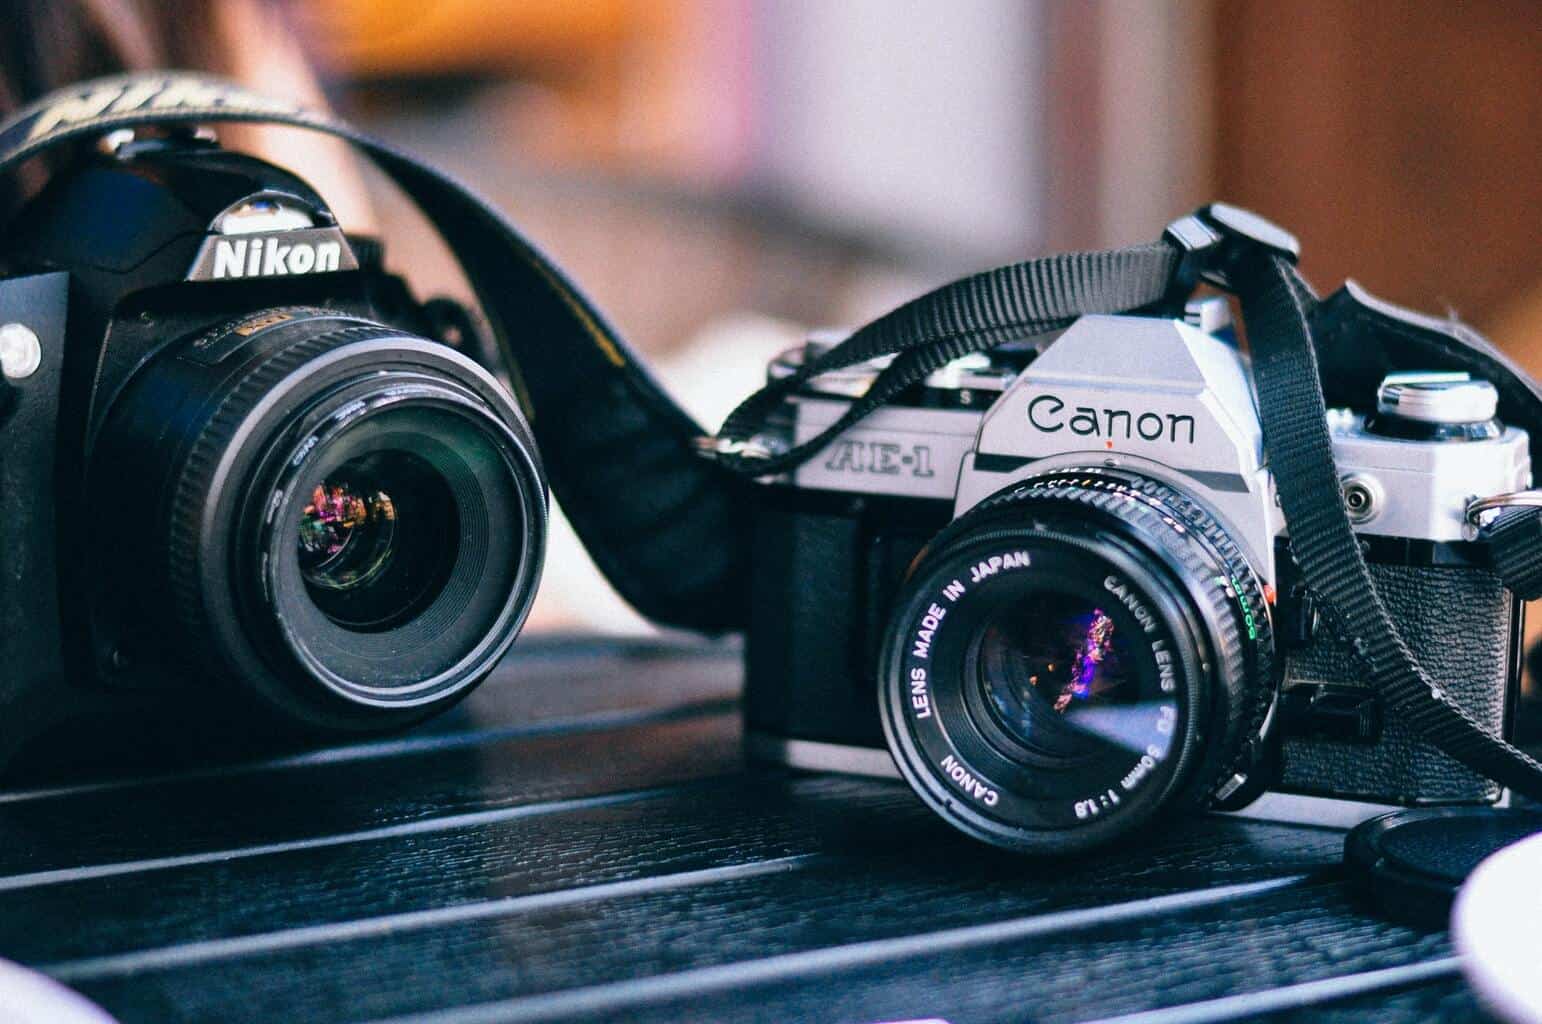 A photo showing a Nikon and Canon cameras